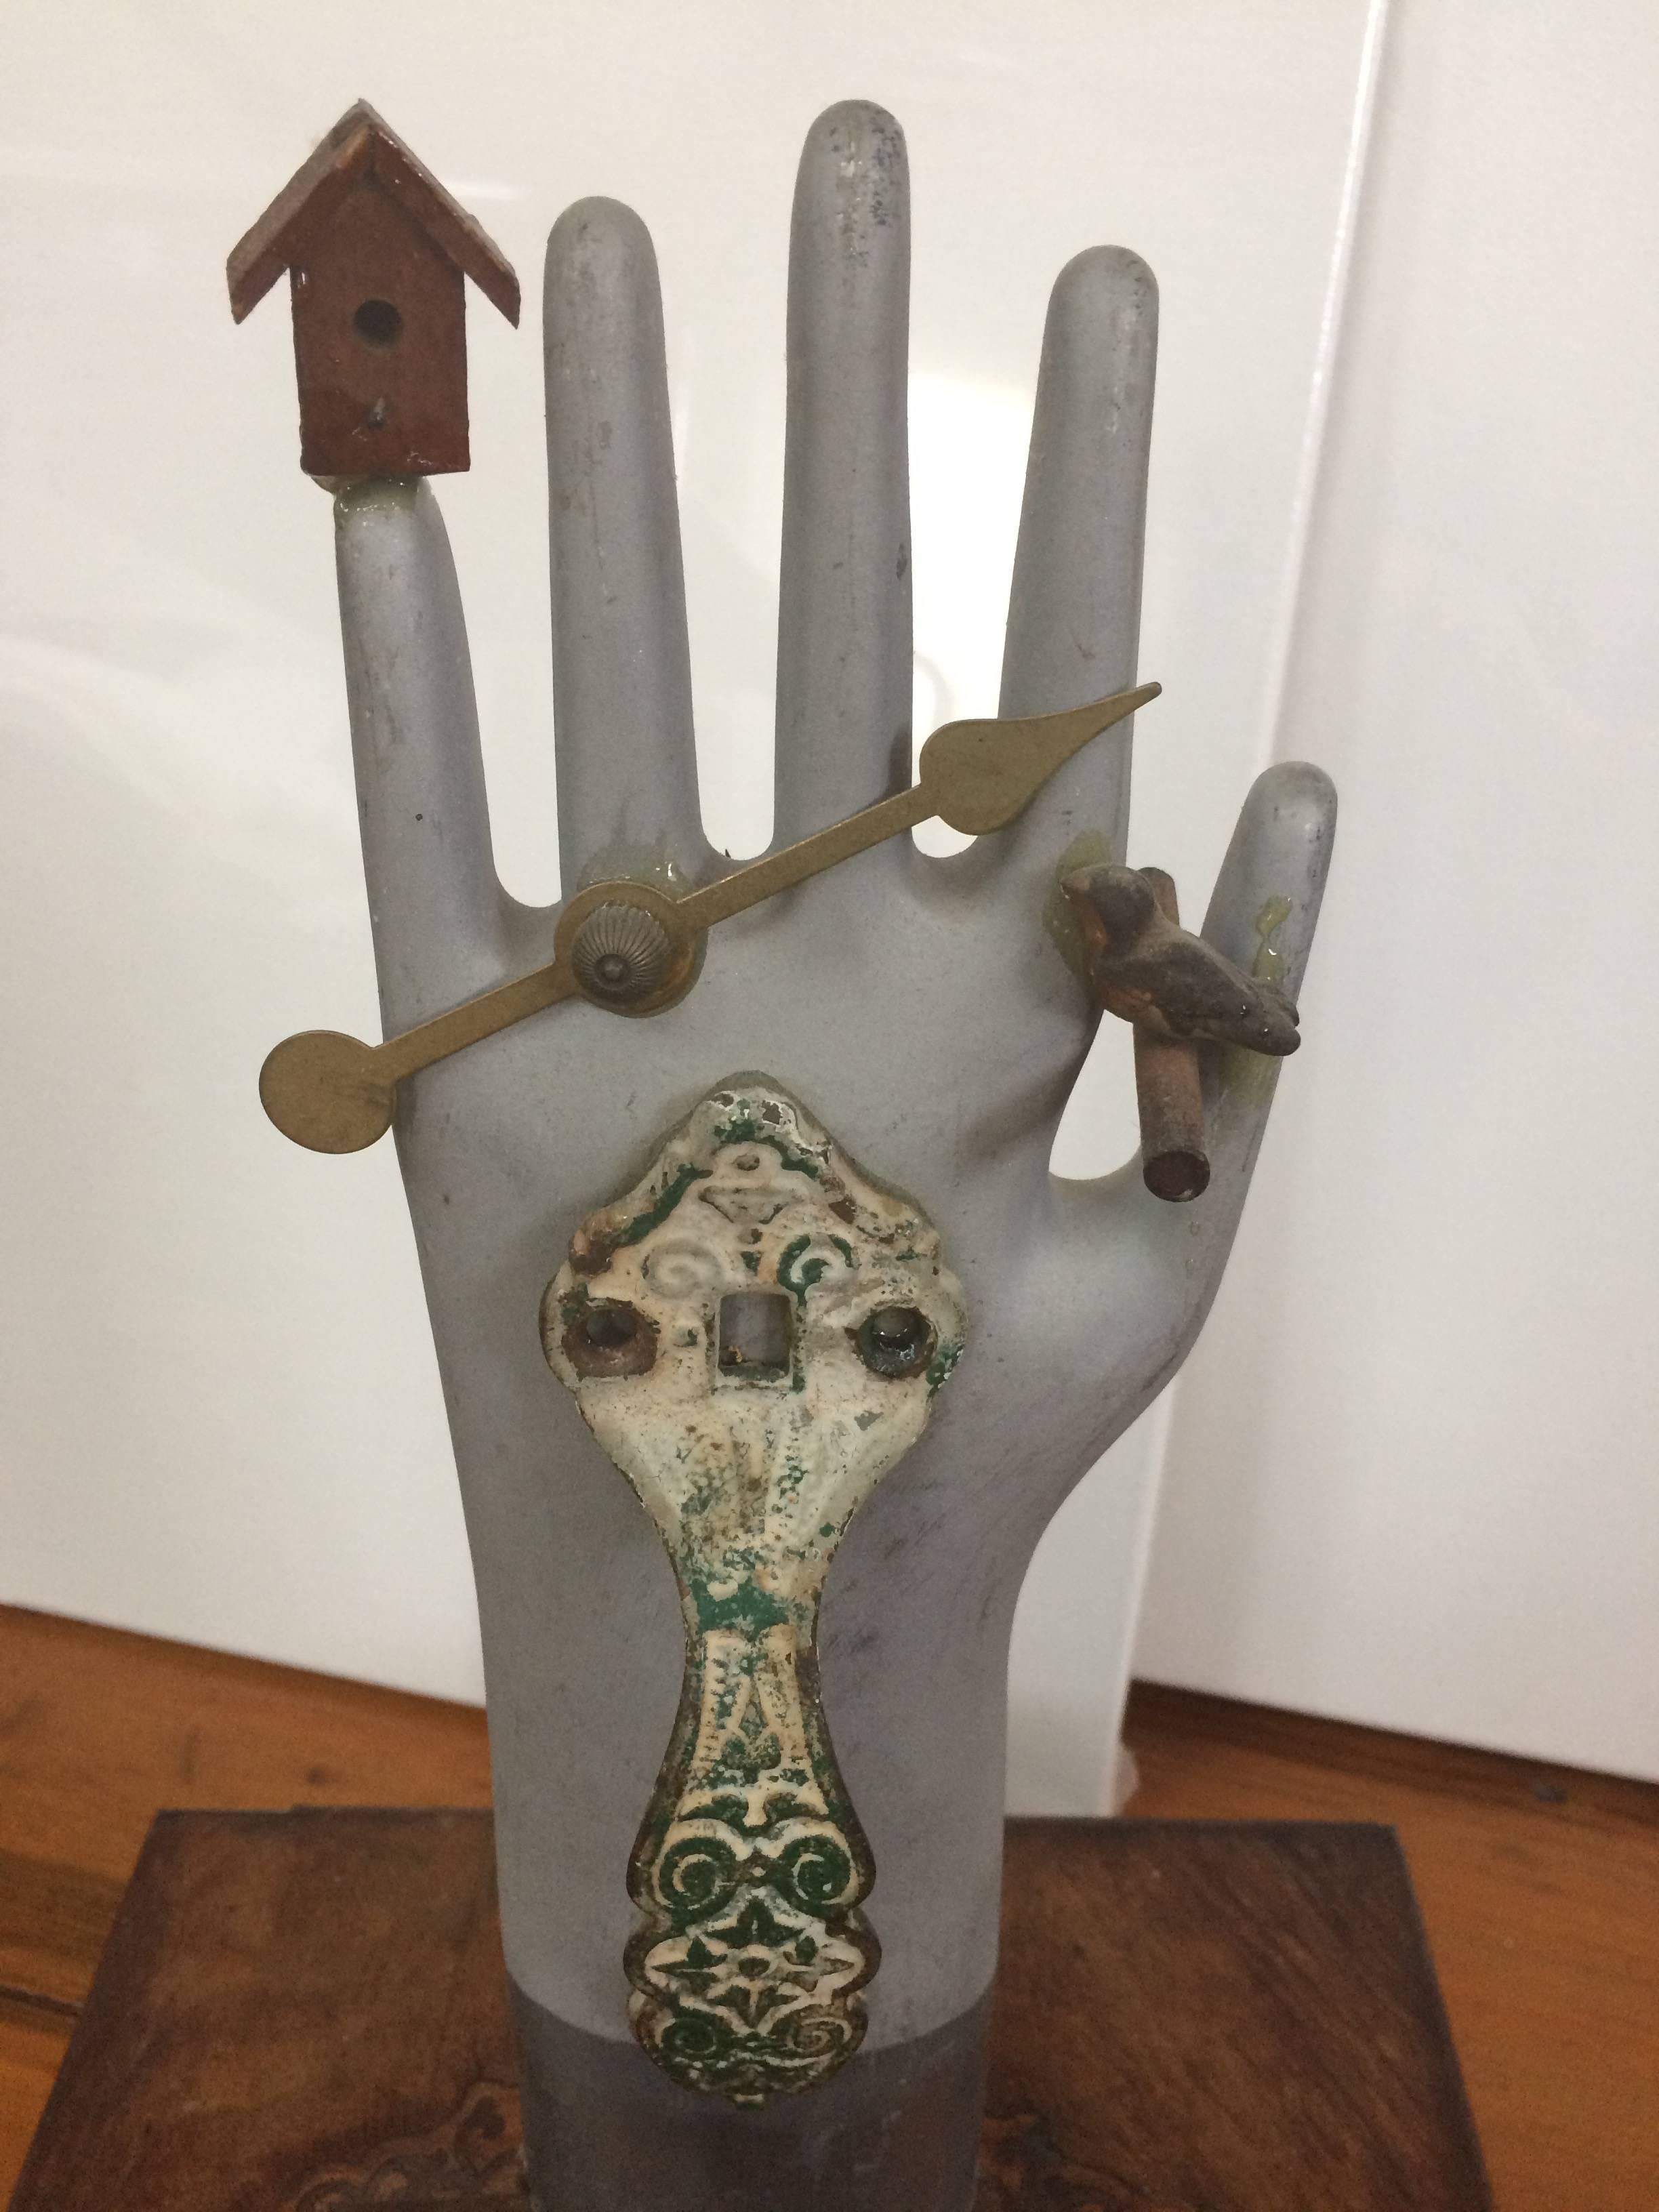 Une œuvre d'art qui part d'une boîte ancienne en bois incrusté et qui devient un assemblage comprenant un moule de gant en métal vintage qui sert de moyen d'ouverture de la boîte, des morceaux d'un coucou déconstruit, une poignée en vert-de-gris